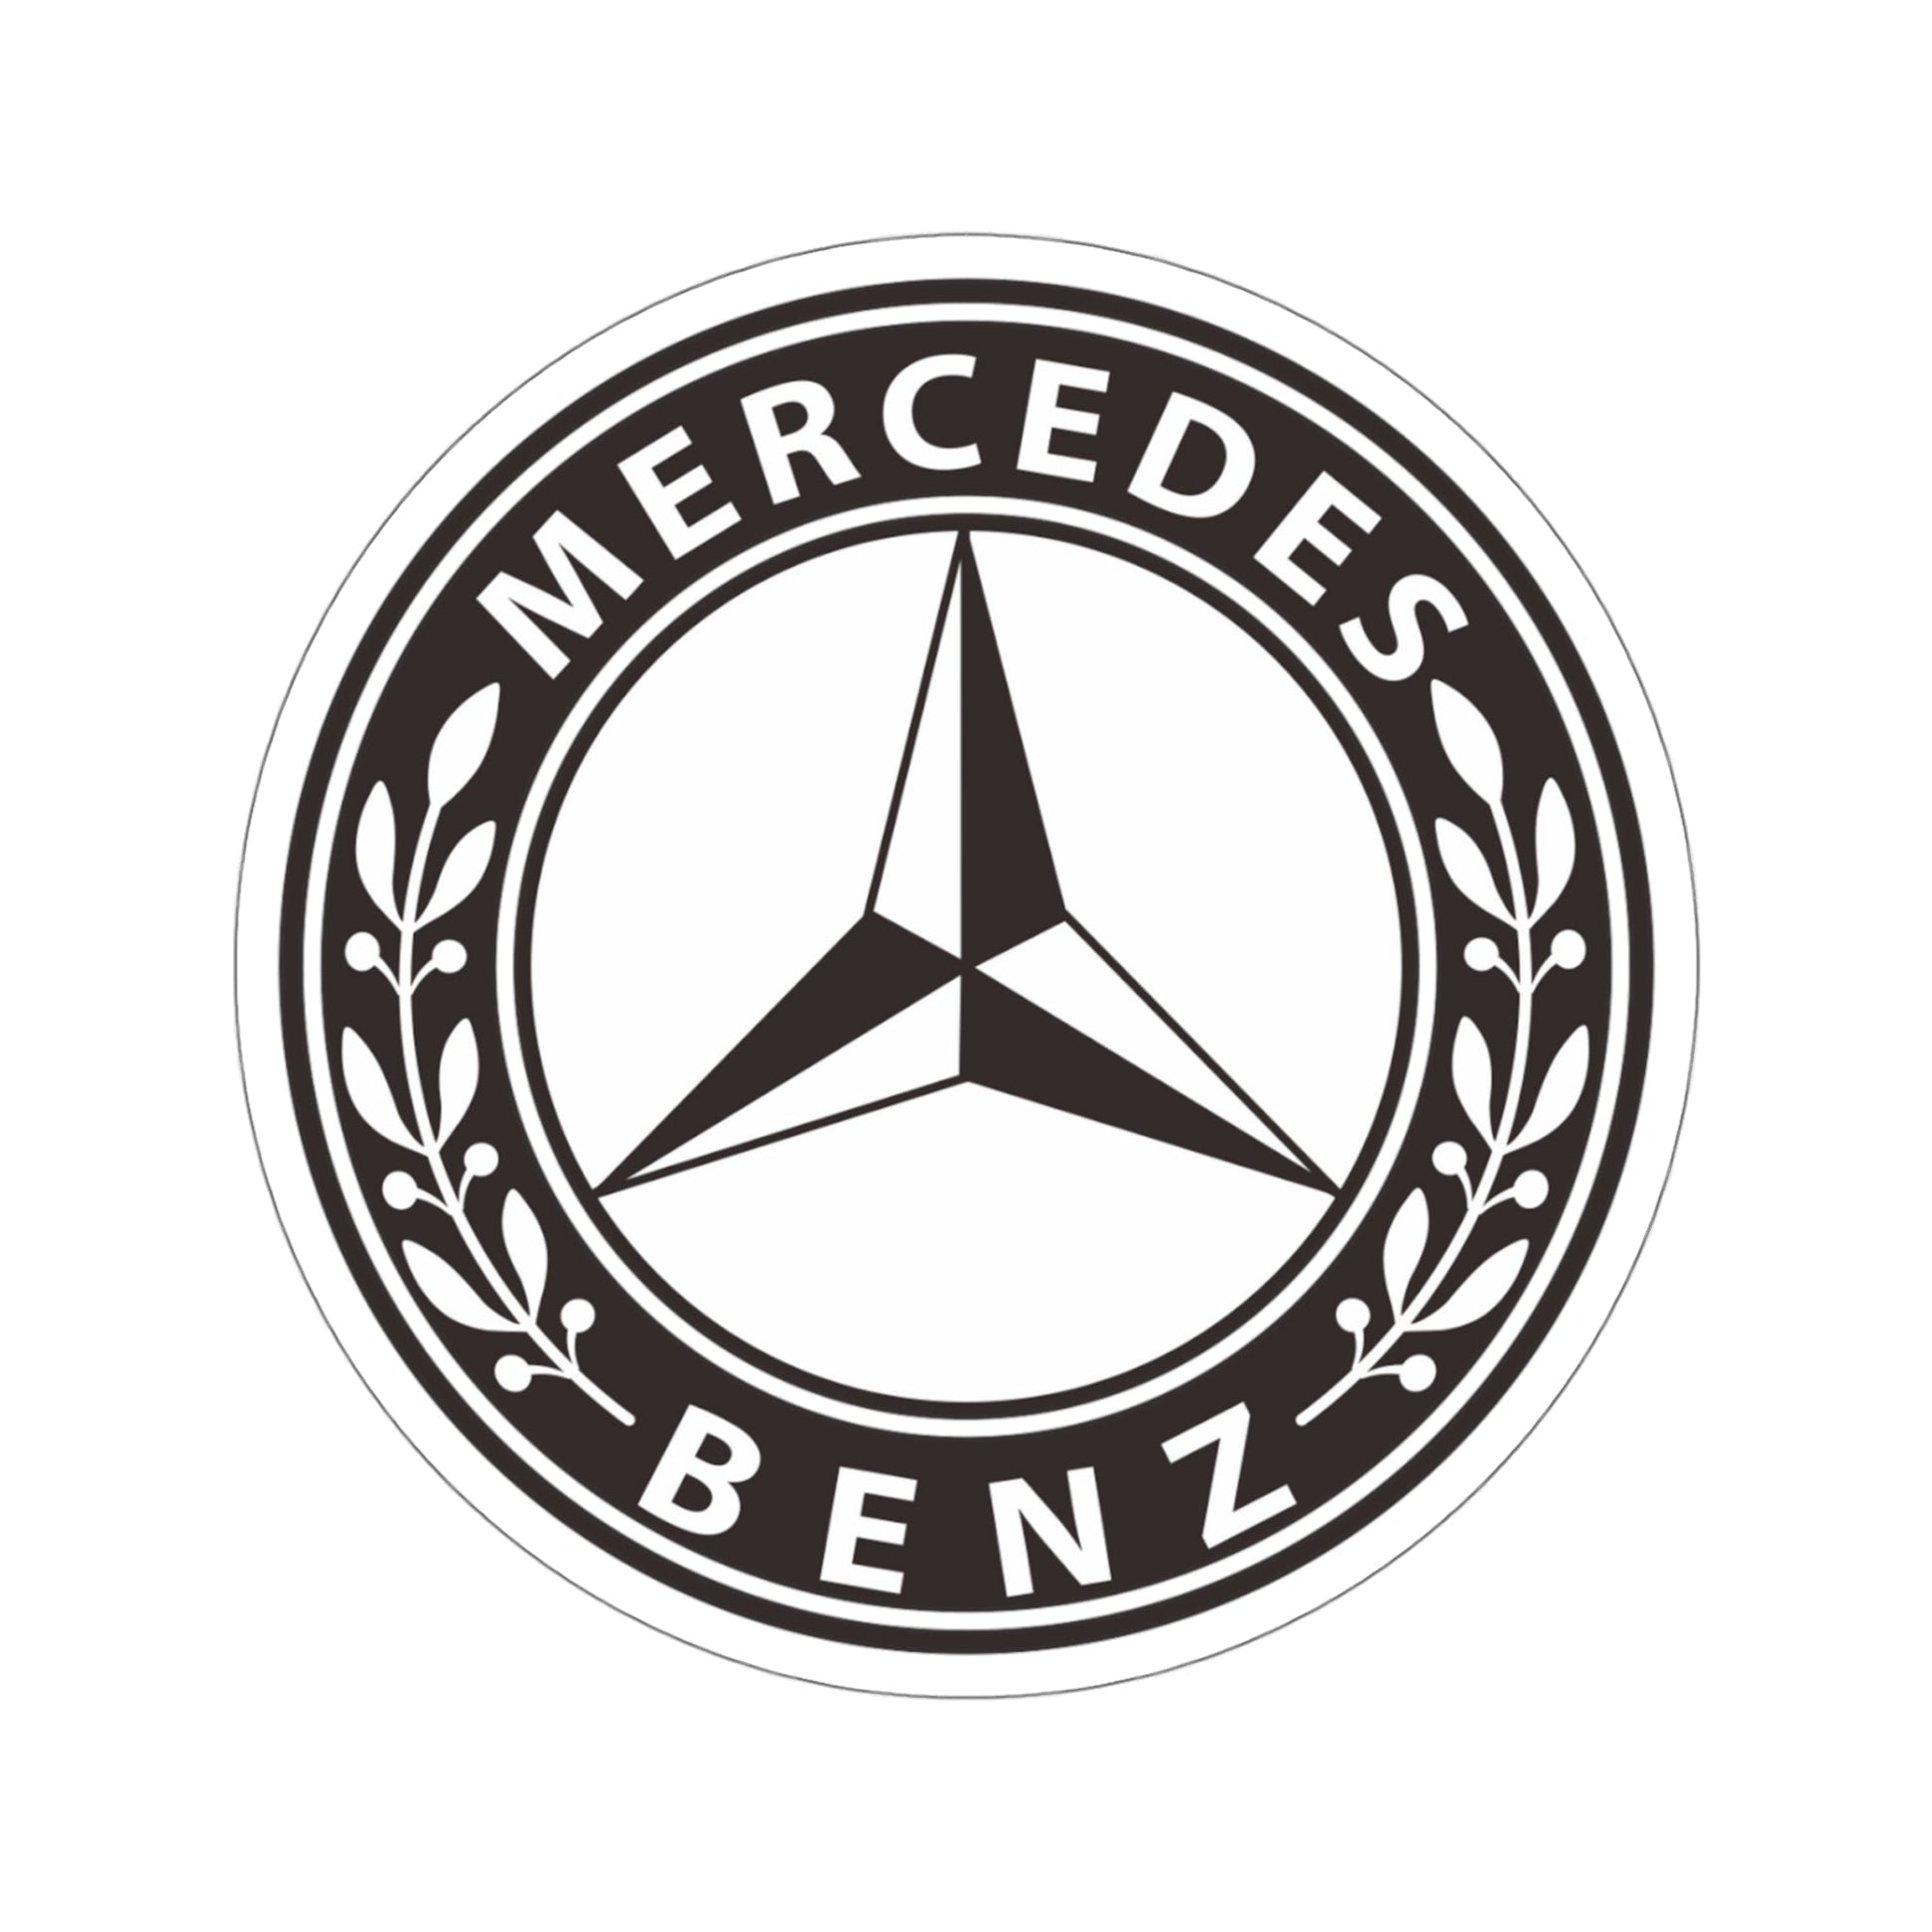 Mercedes Benz 2 Decal